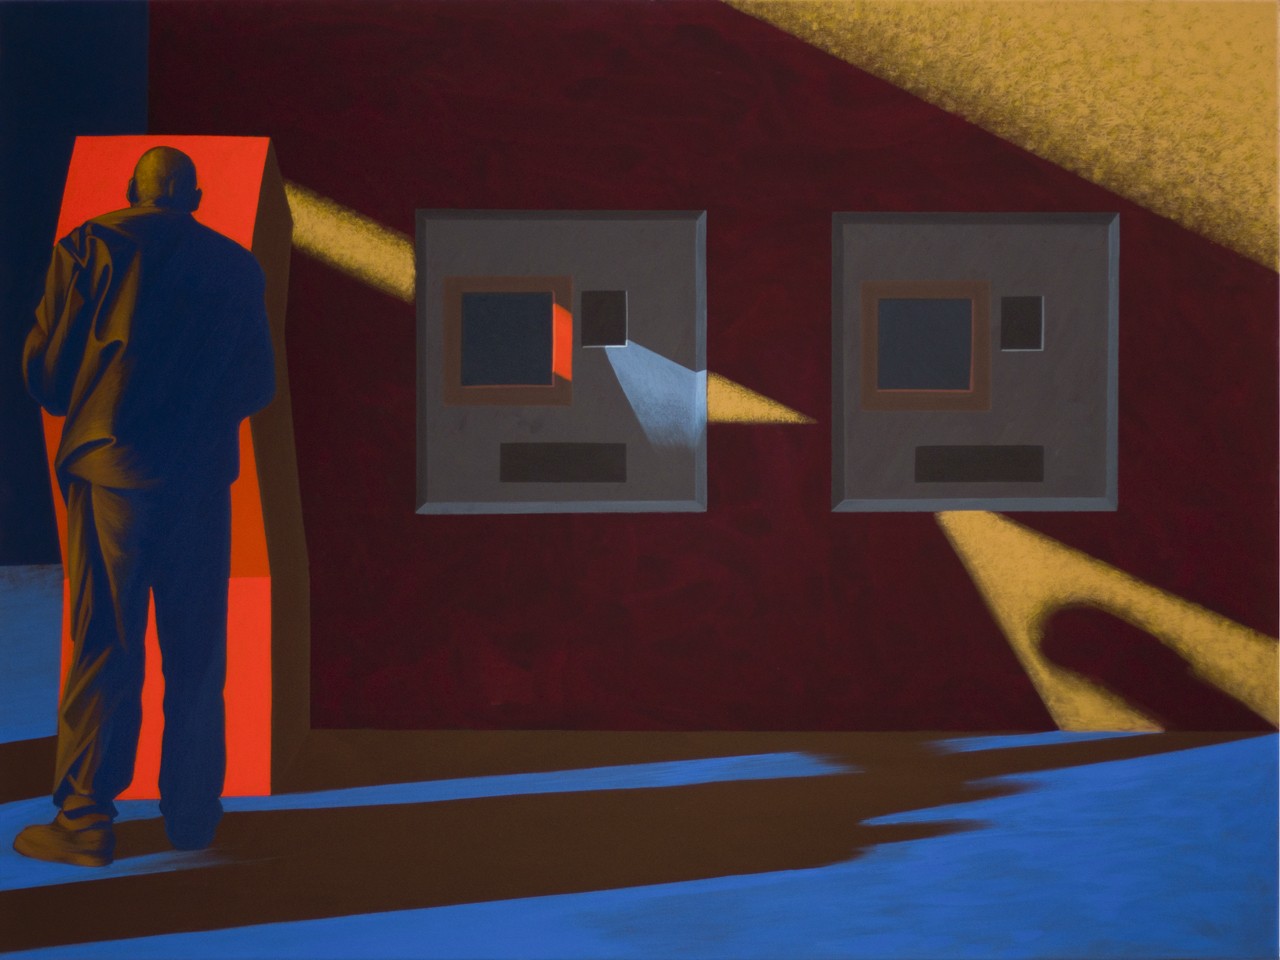 Obraz "Cień I", tempera żółtkowa na płótnie, 120x160 cm, z cyklu "międzyprzestrzeń", abstrakcyjne cienie na ścianie, mężczyzna stojący tyłem